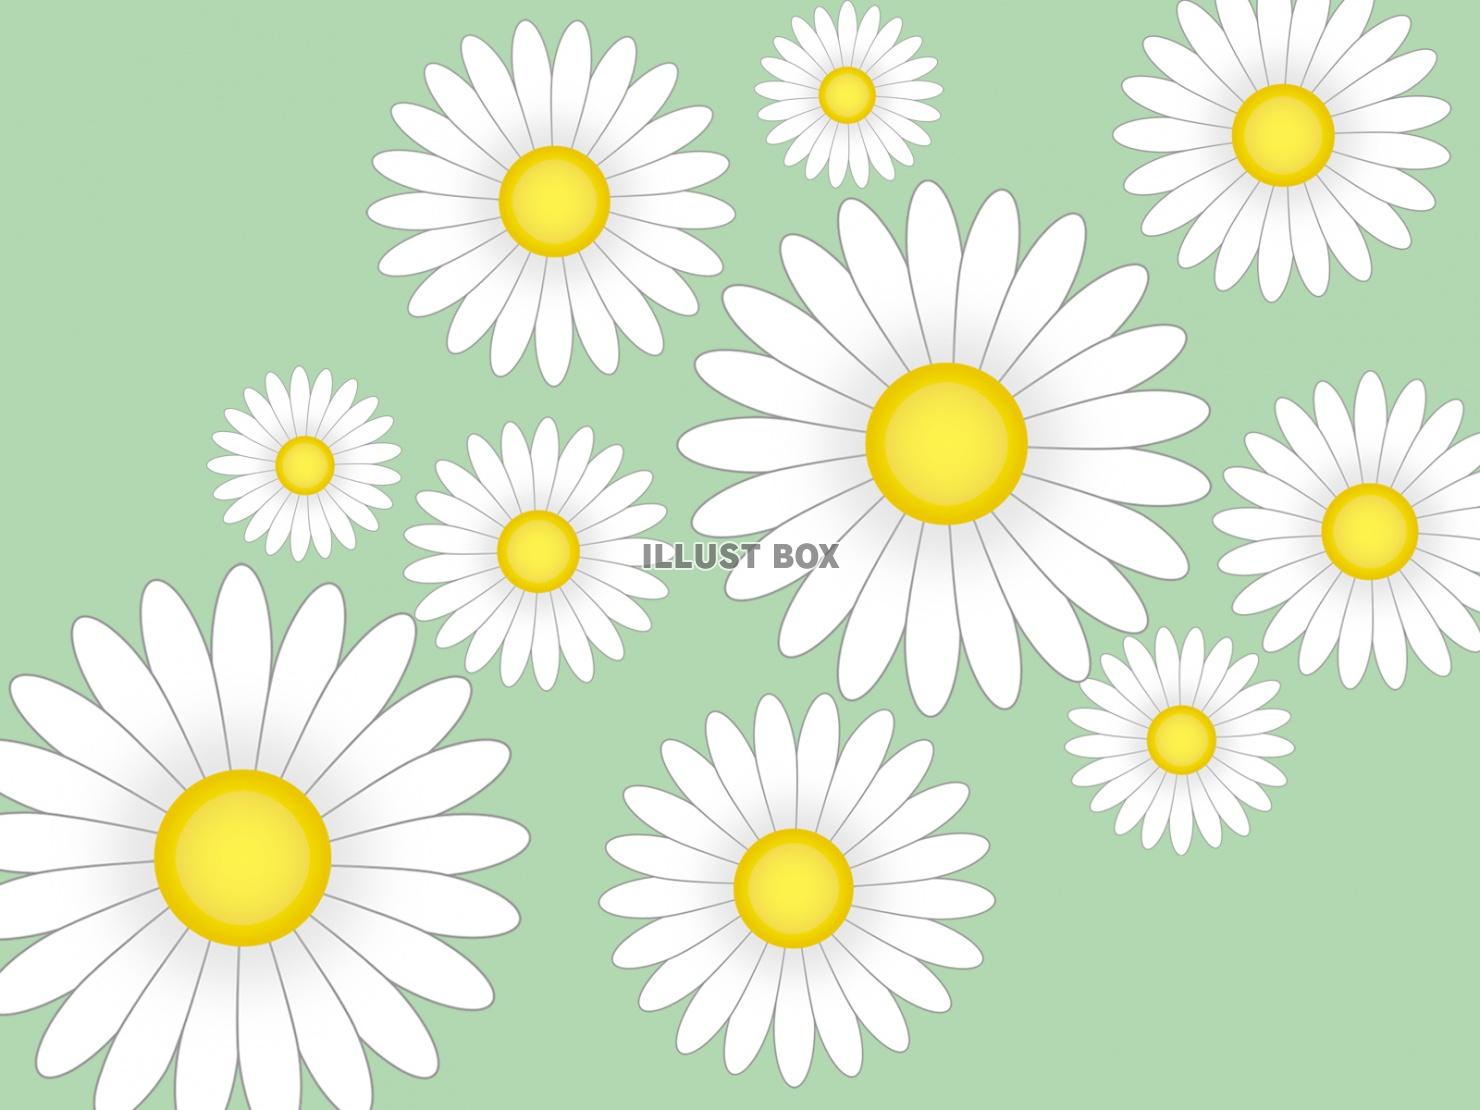 無料イラスト 白いお花模様壁紙シンプル背景素材イラスト